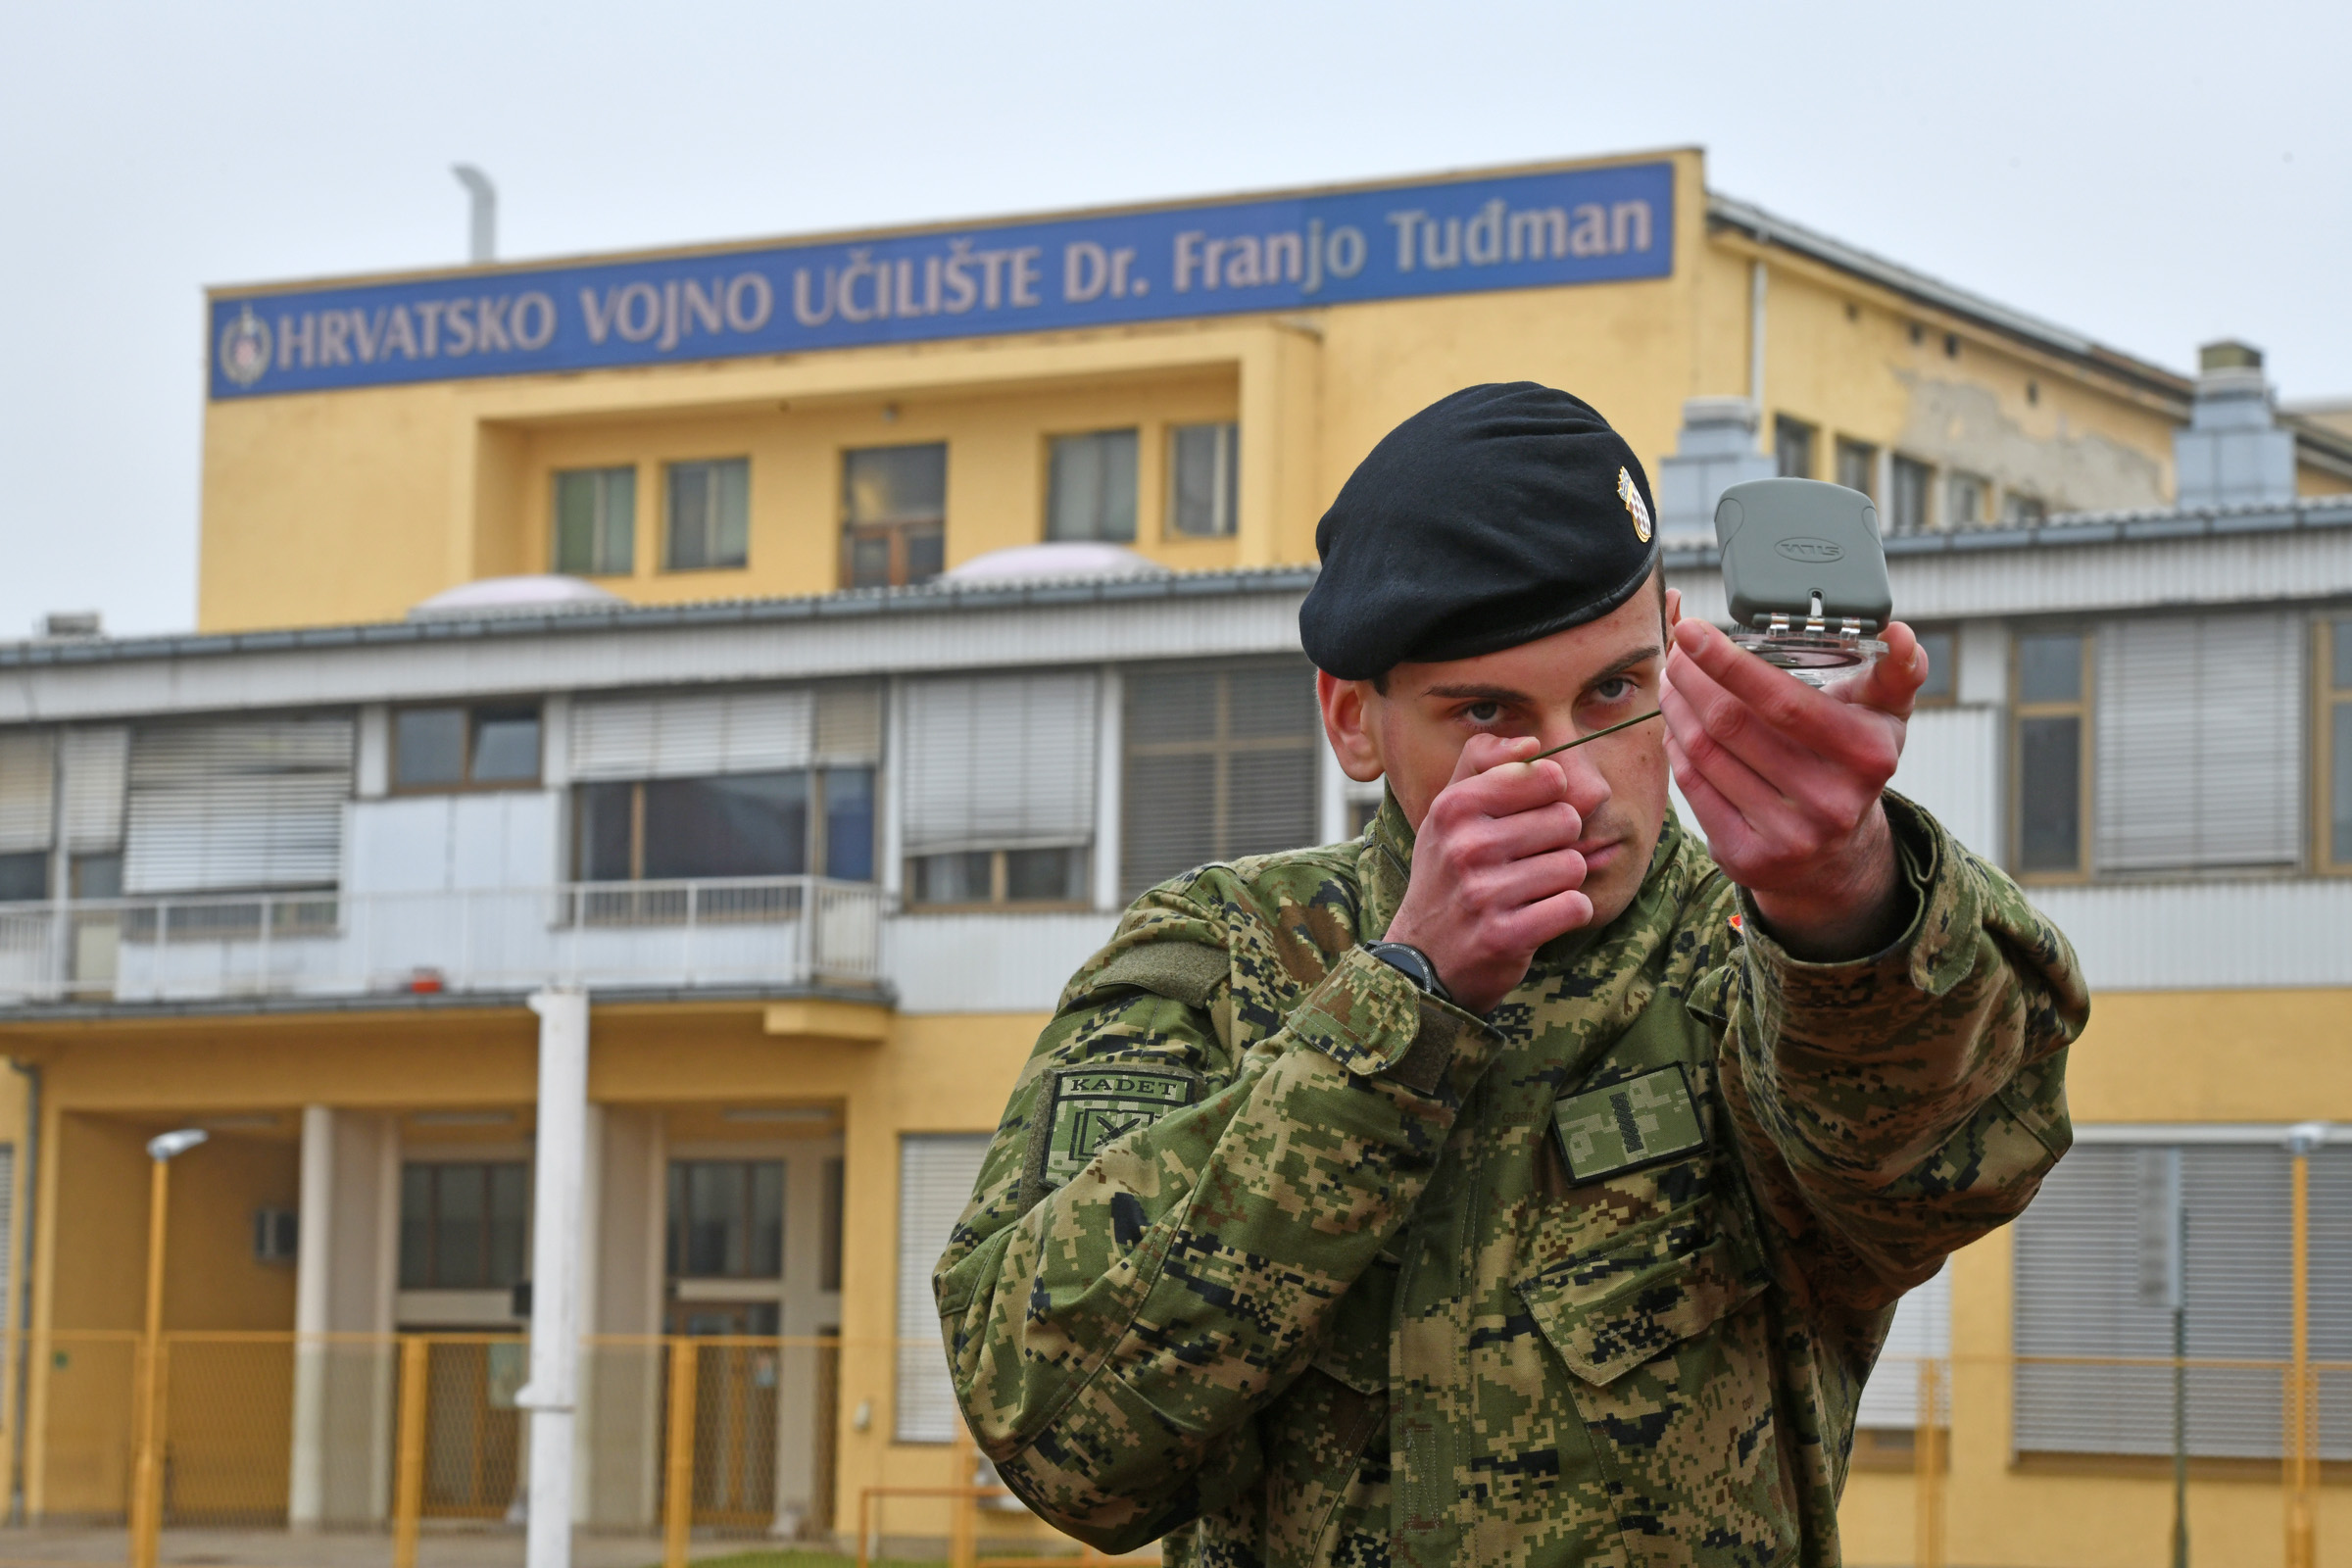 Obuka kadeta OSRH na Hrvatskom vojnom učilištu 'Dr. Franjo Tuđman'